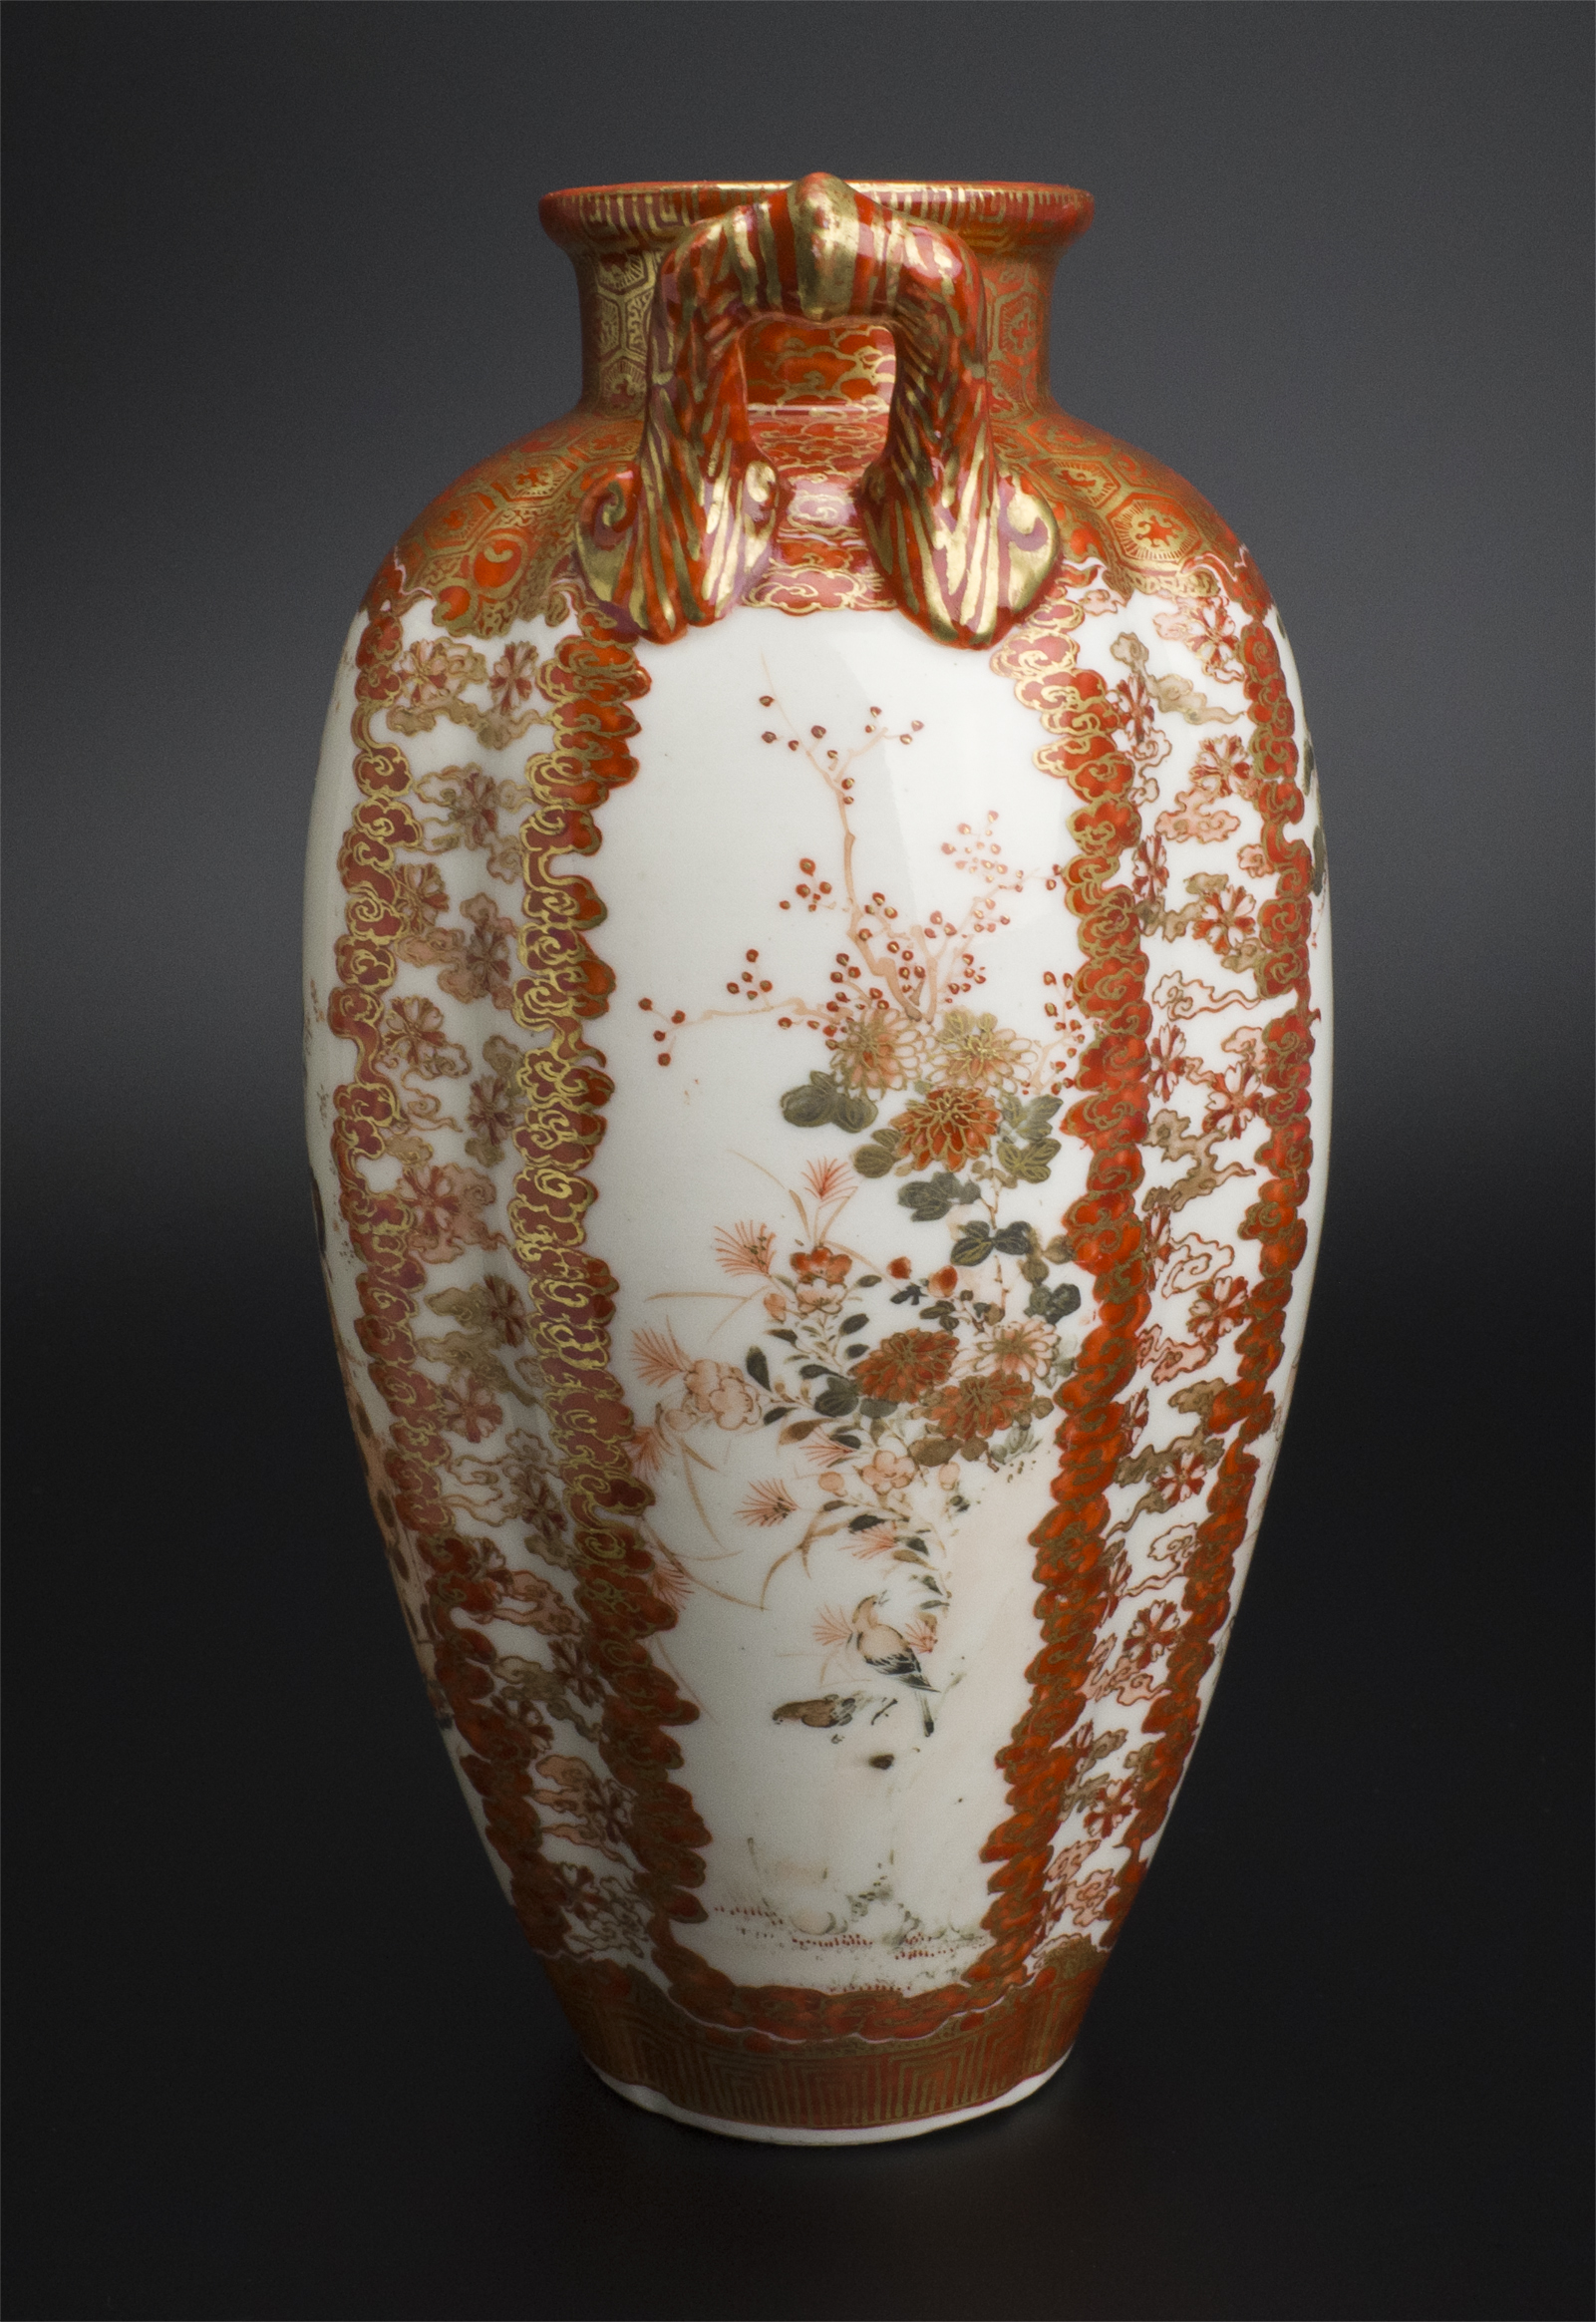 値段加賀九谷綿野製 金彩人物紋瓶 明治時代 古美術 花器、壷